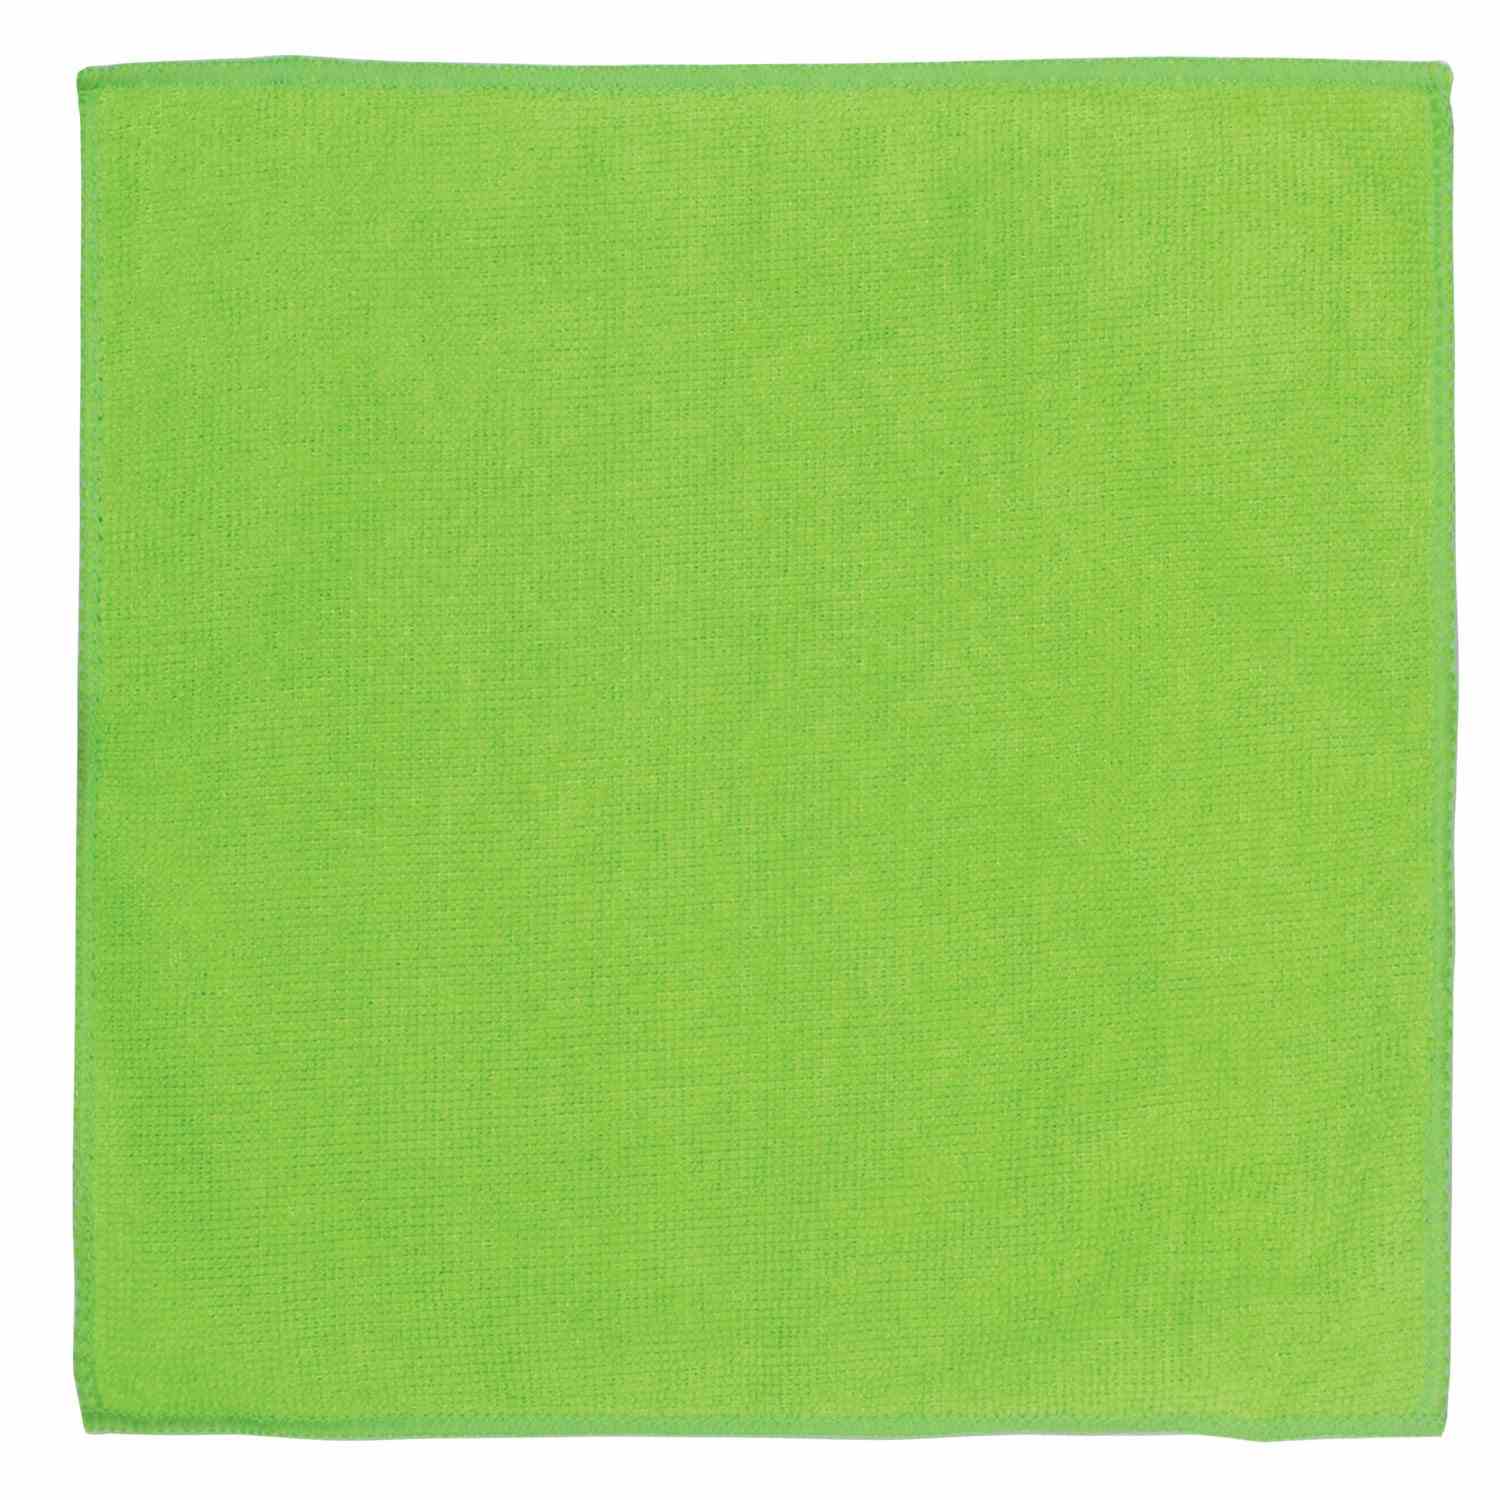 картинка Салфетка из микрофибры, 1 шт, 30*30, зеленый, "Стандарт", ОФИСМАГ, 601259 от магазина Альфанит в Кунгуре